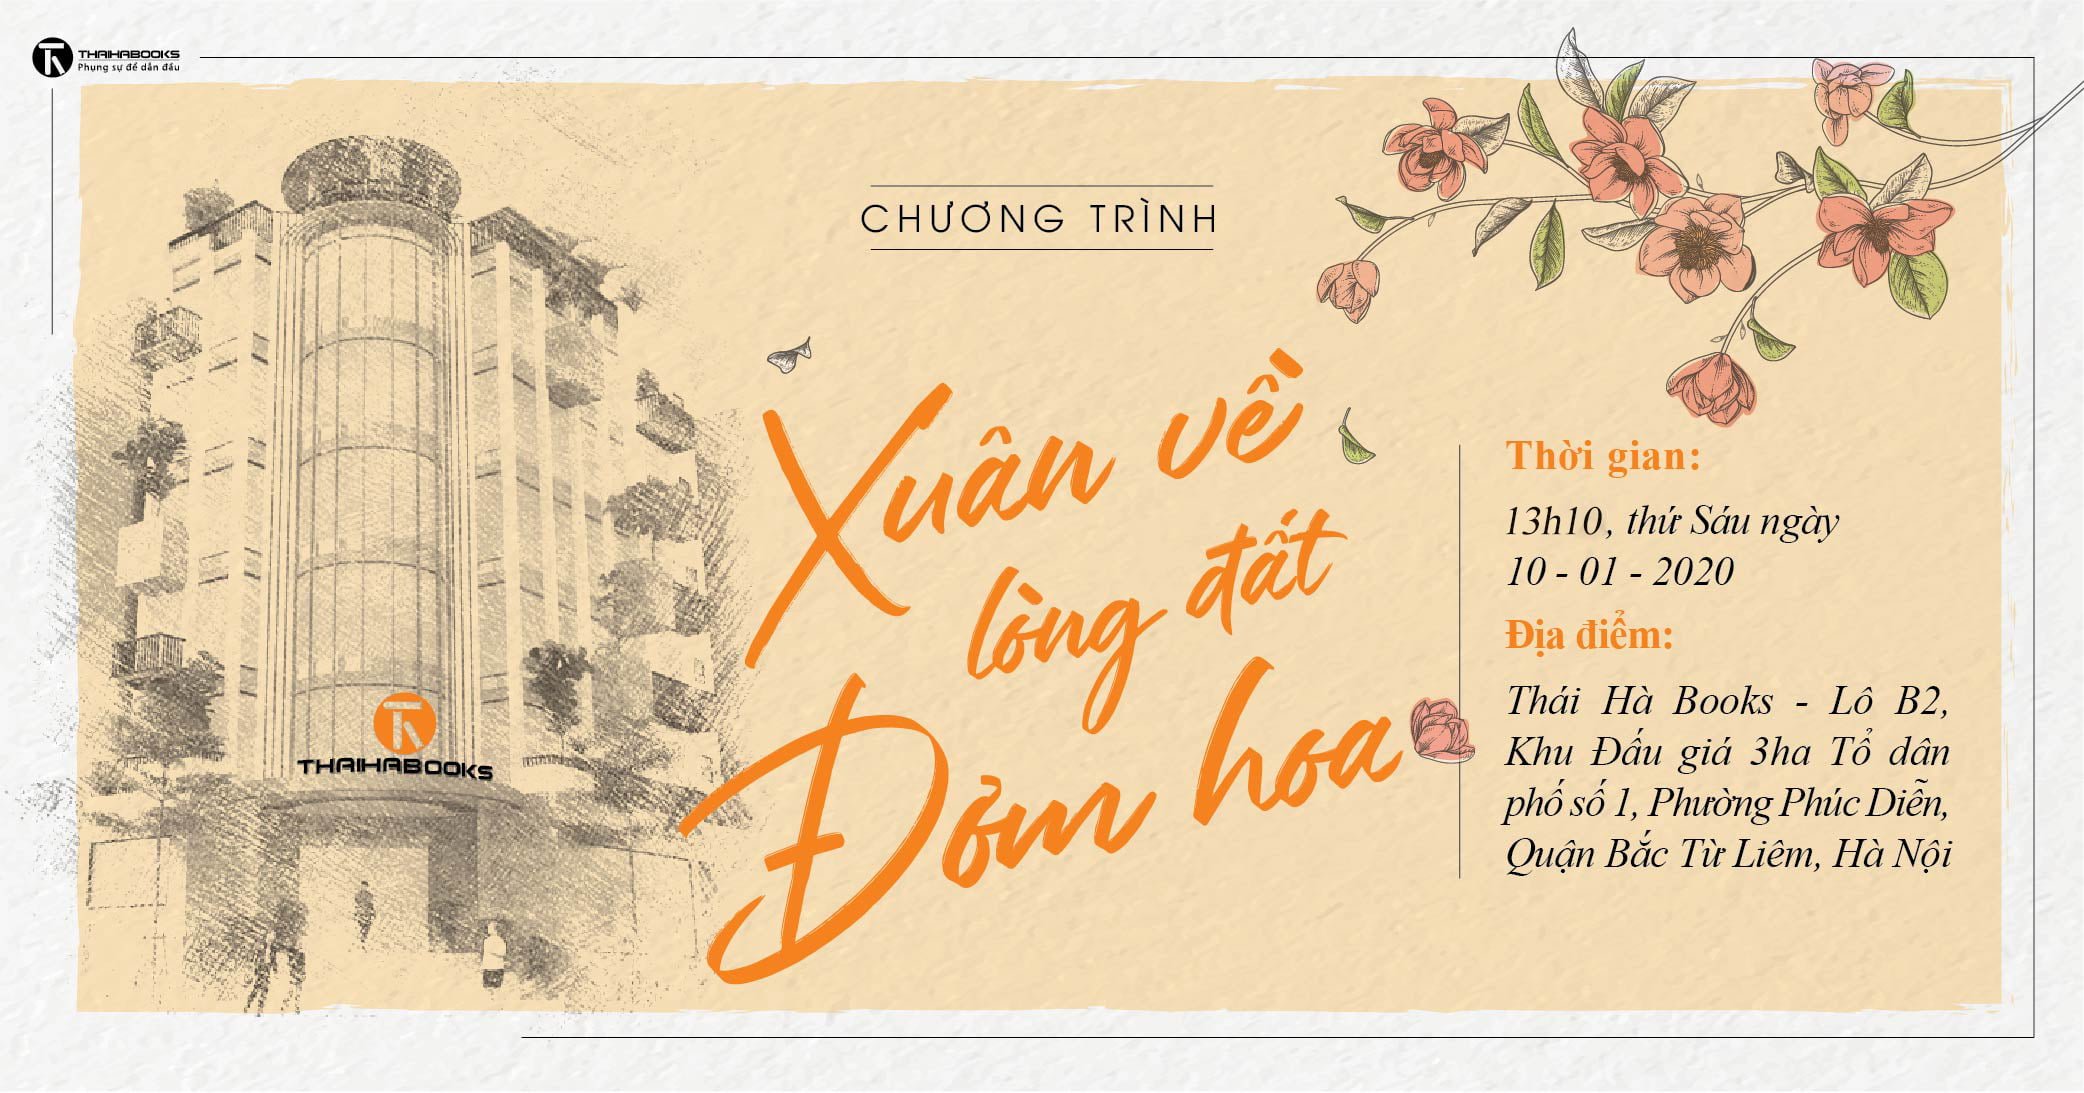 01h10 chiều ngày 10/01: Chương trình “Xuân về lòng đất đơm hoa” tại Tòa nhà Thái Hà Books